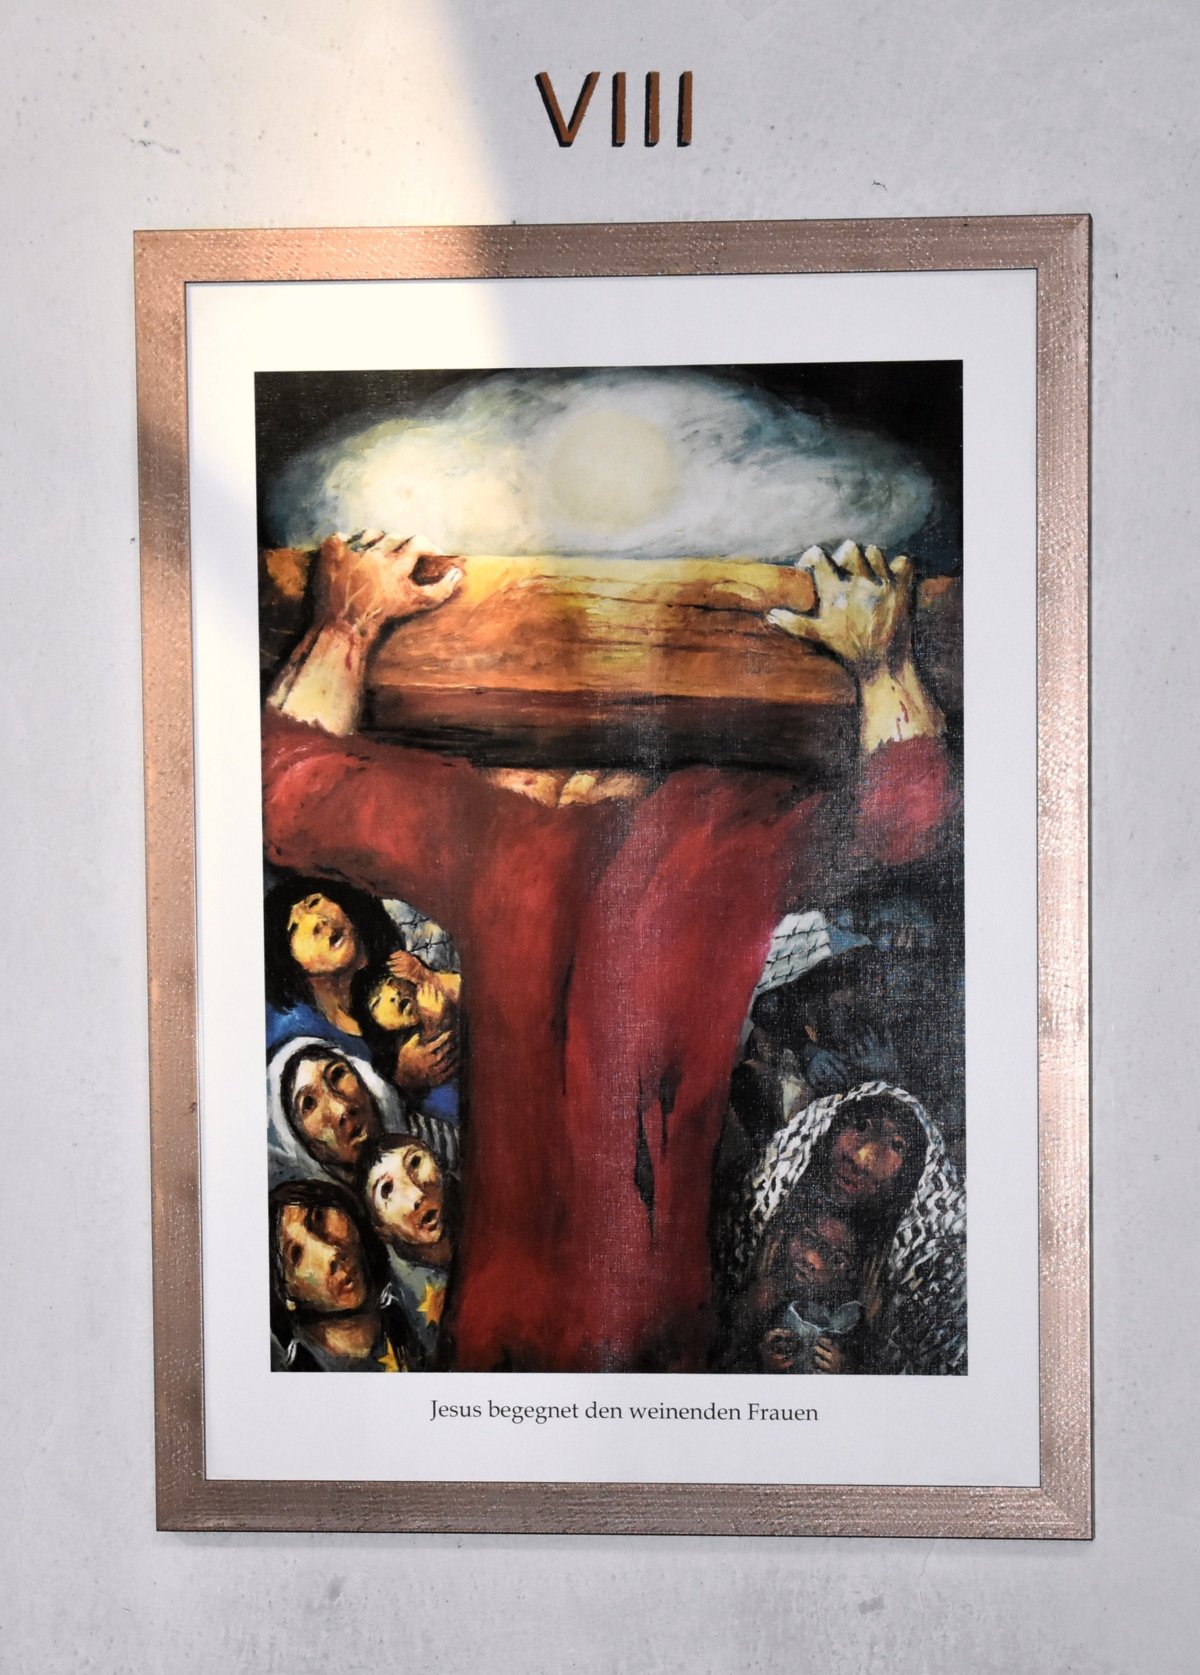 8. Station: Jesus begegnet den weinenden Frauen (c) M. Haschke